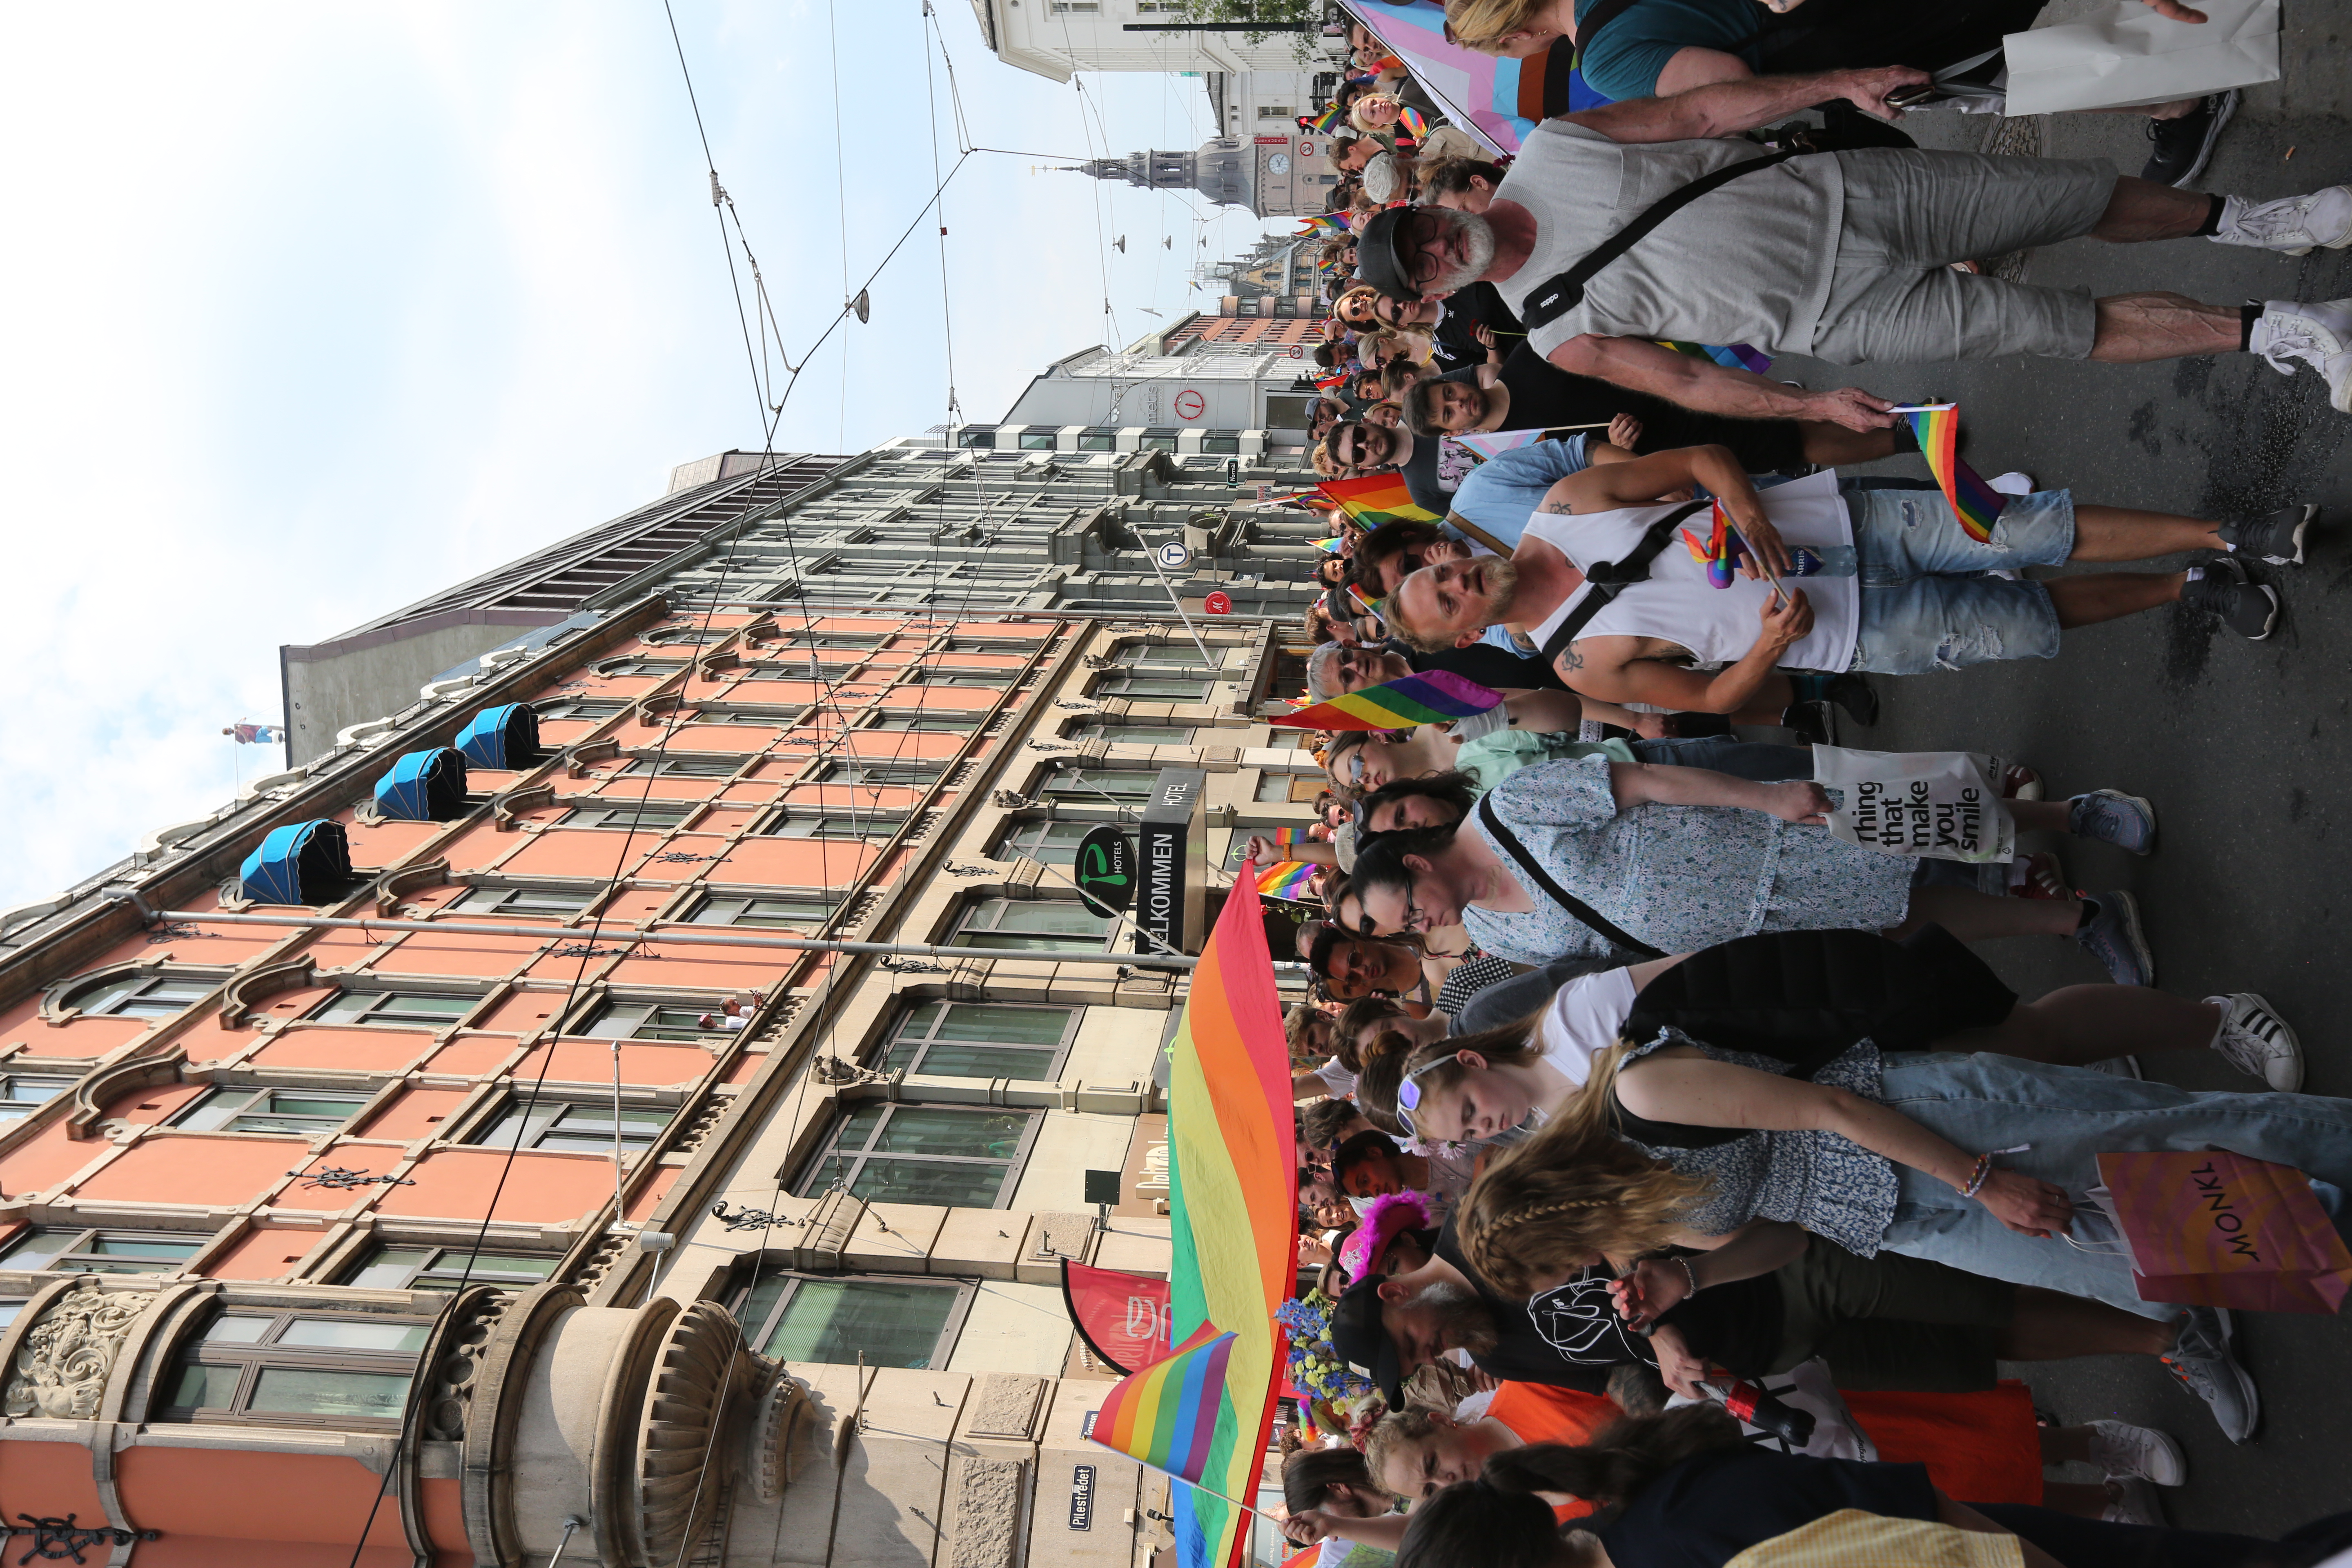 Bildet viser folk som går i et spontant Pride-tog i Oslo.